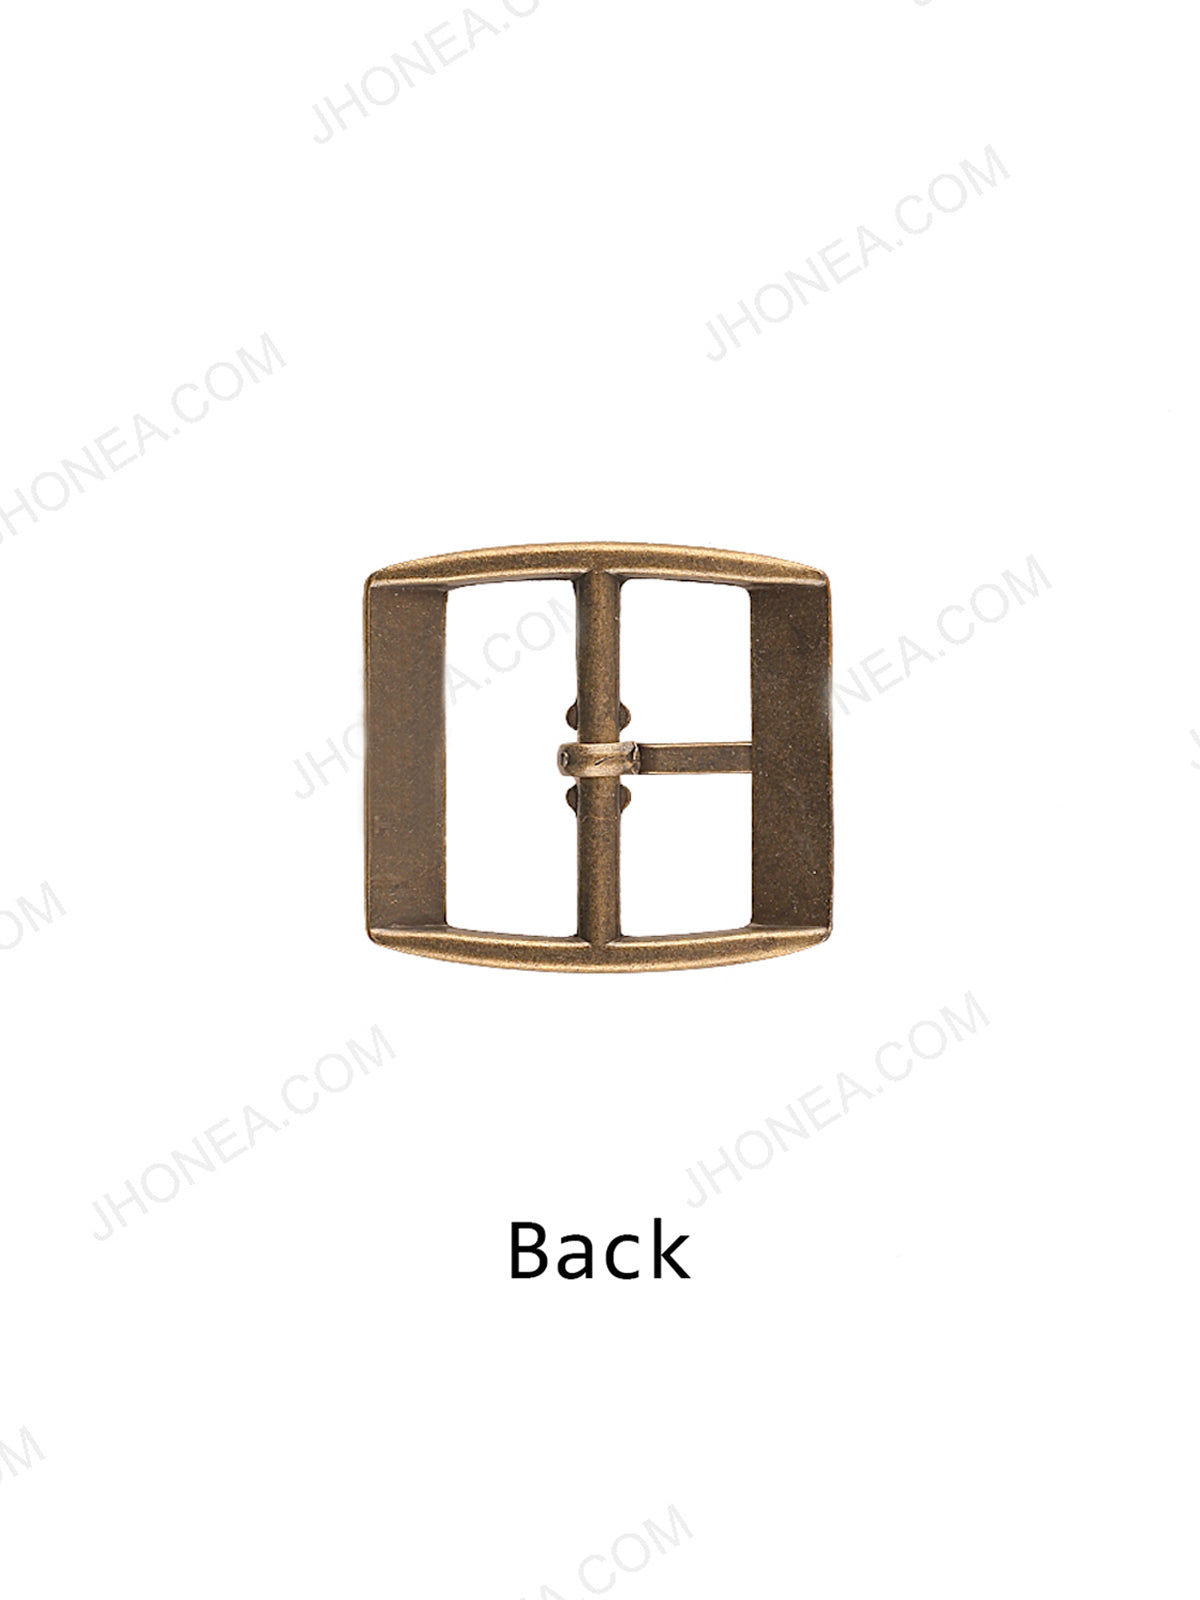 Plain Antique Brass Rectangular Unisex Belt Buckle